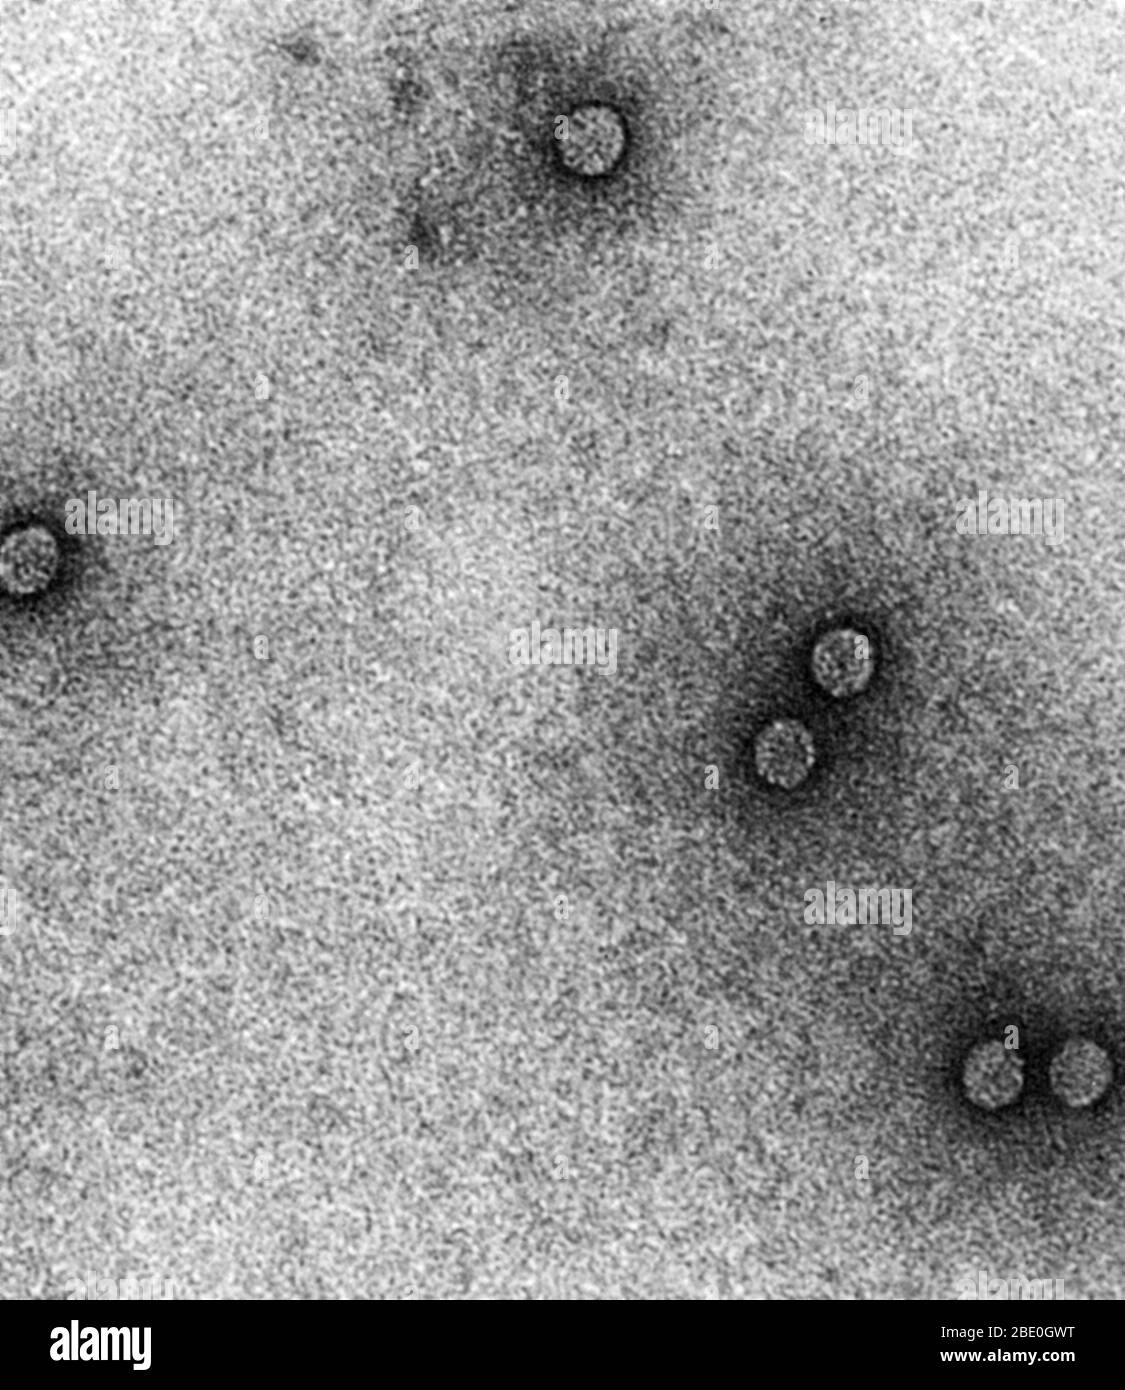 Microscopio elettronico a trasmissione (TEM) di rhinovirus, che provocano il raffreddore comune. Ingrandimento: x200.000. Foto Stock